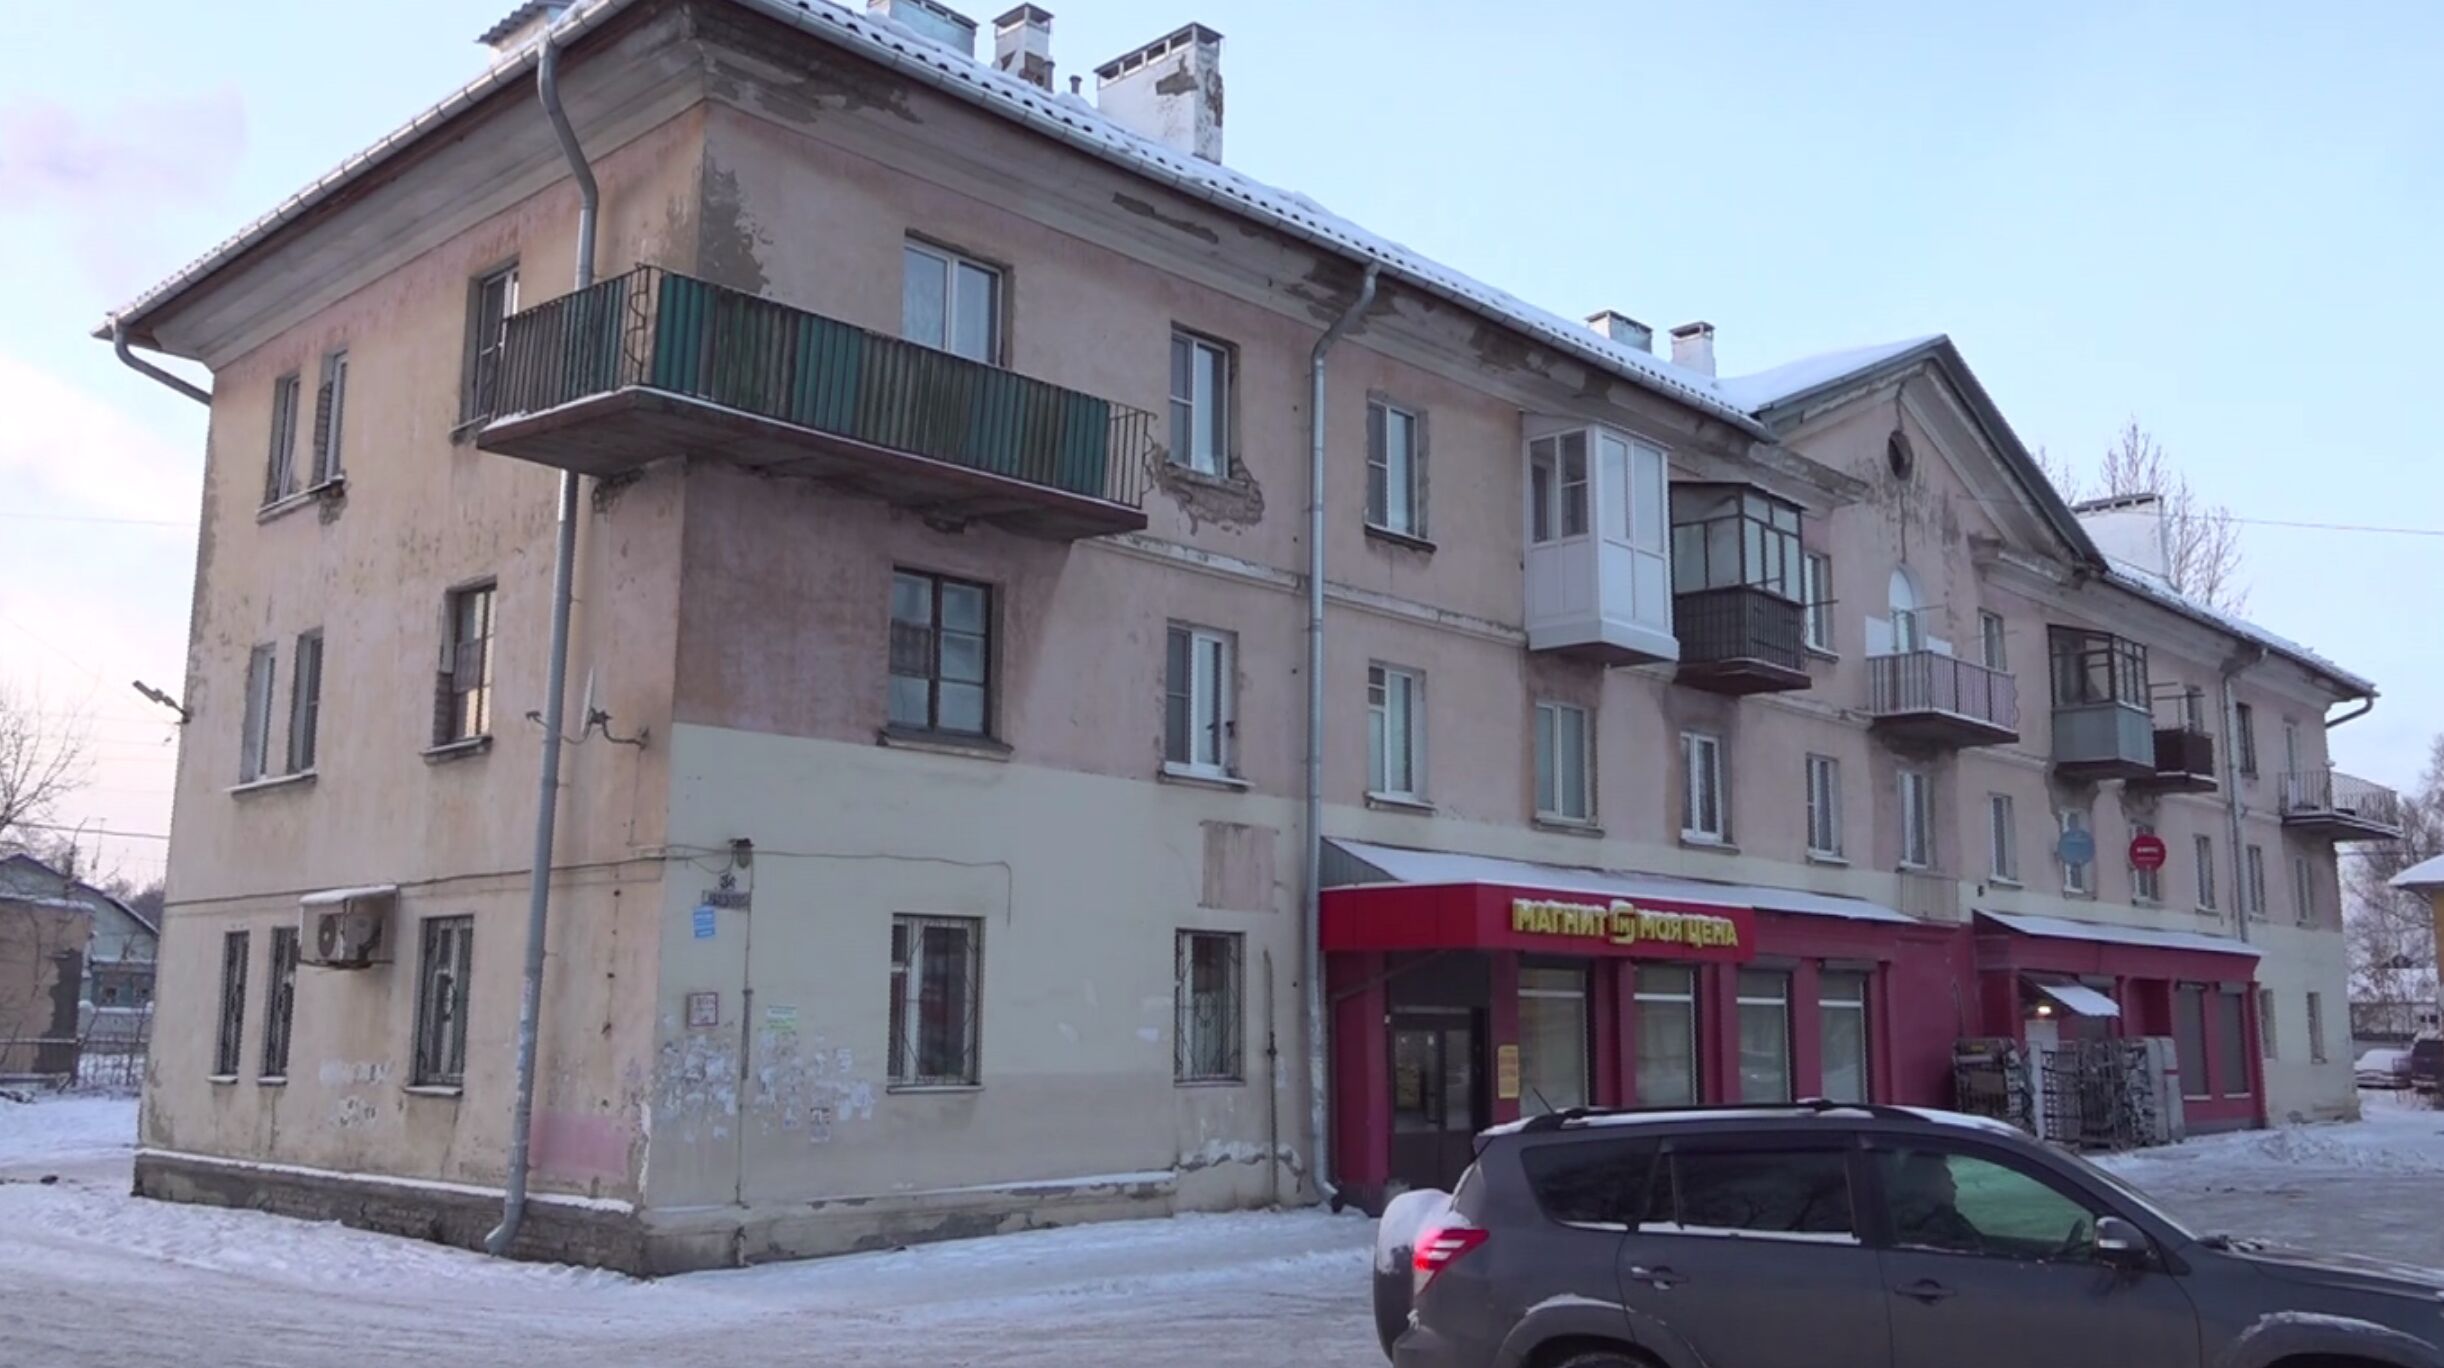 Проснулись от треска: в жилом доме на улице Вишняки в Ярославле частично разрушилась несущая стена